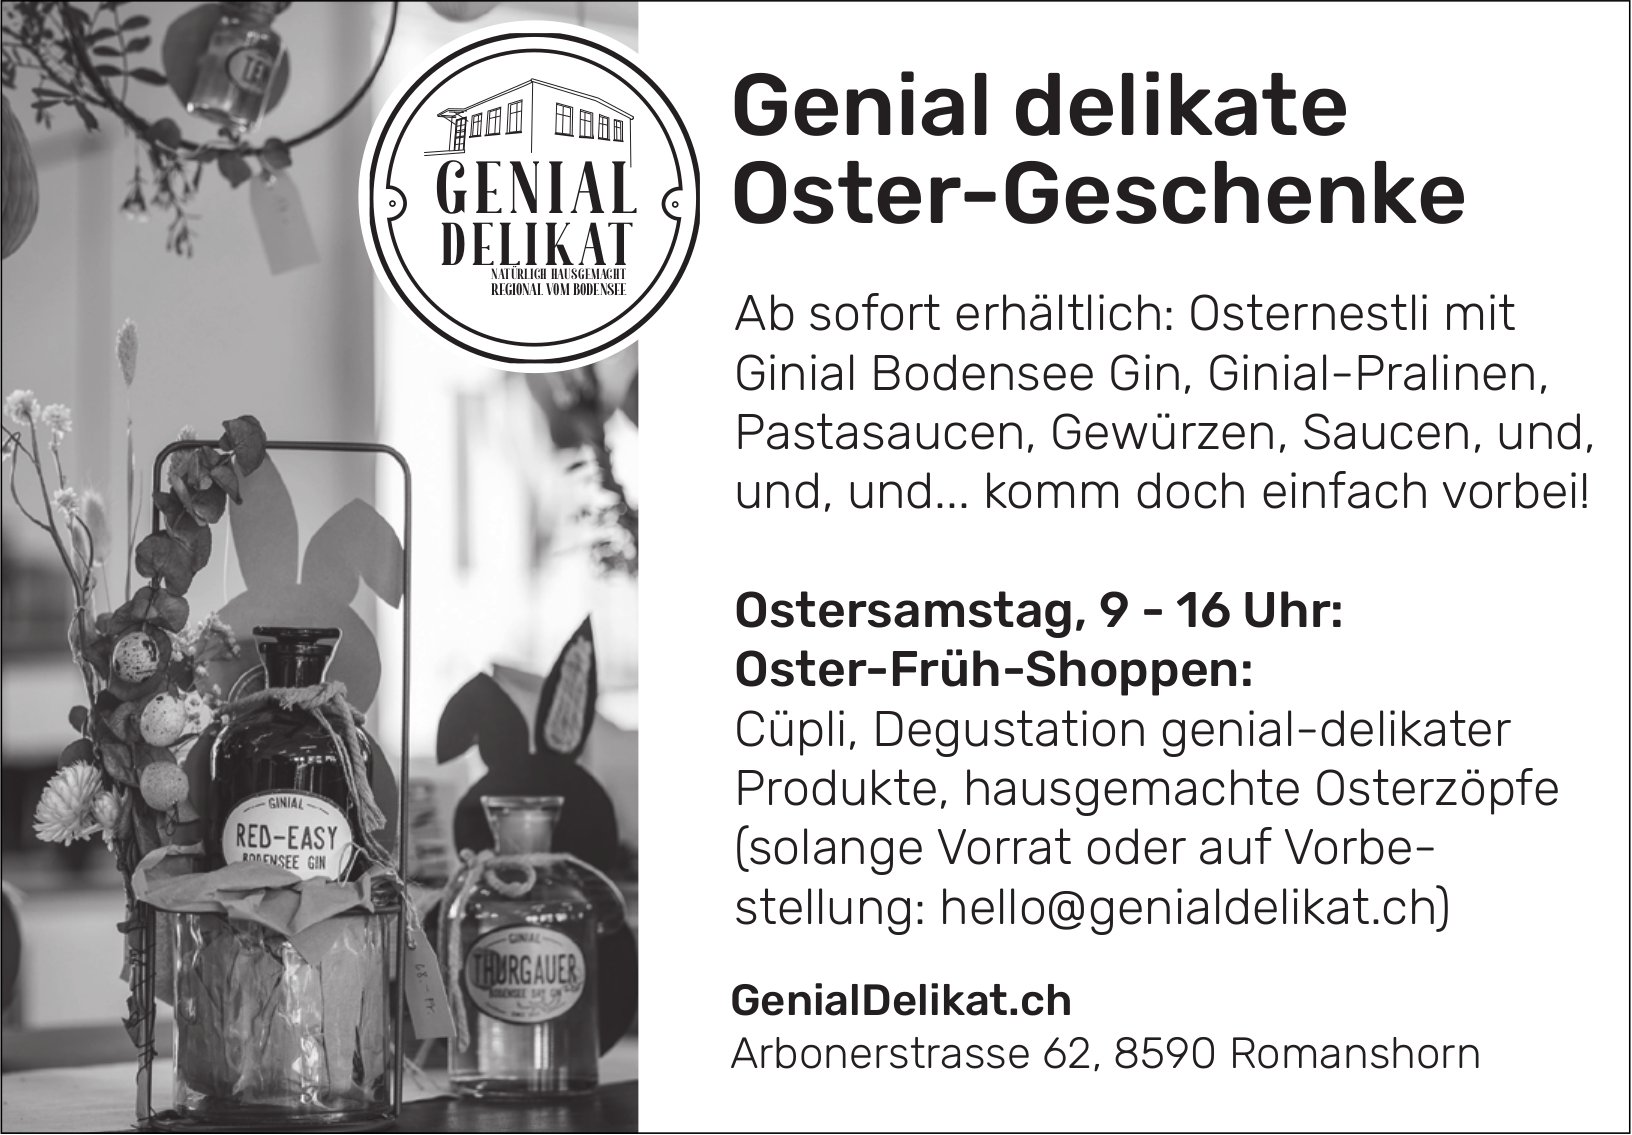 Genial Delikat, Romanshorn - Genial delikate Oster-Geschenke